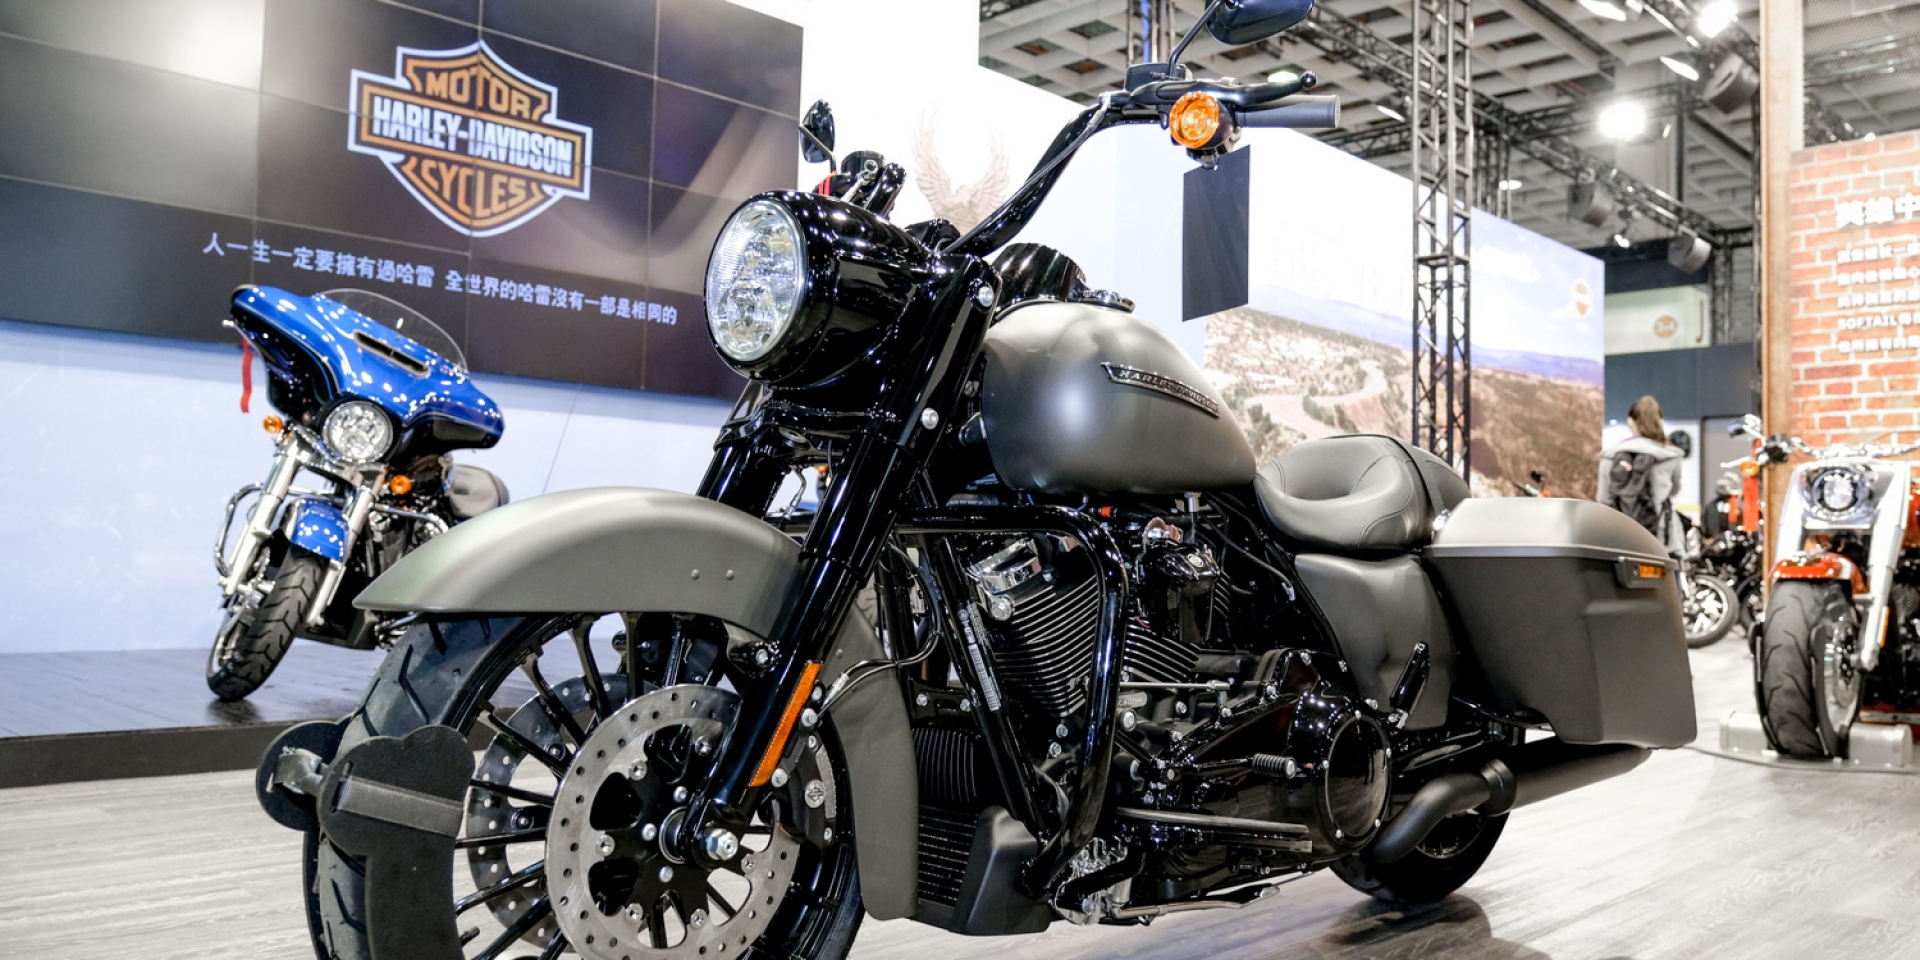 2018世界新車大展。Harley-Davidson全新車款發表